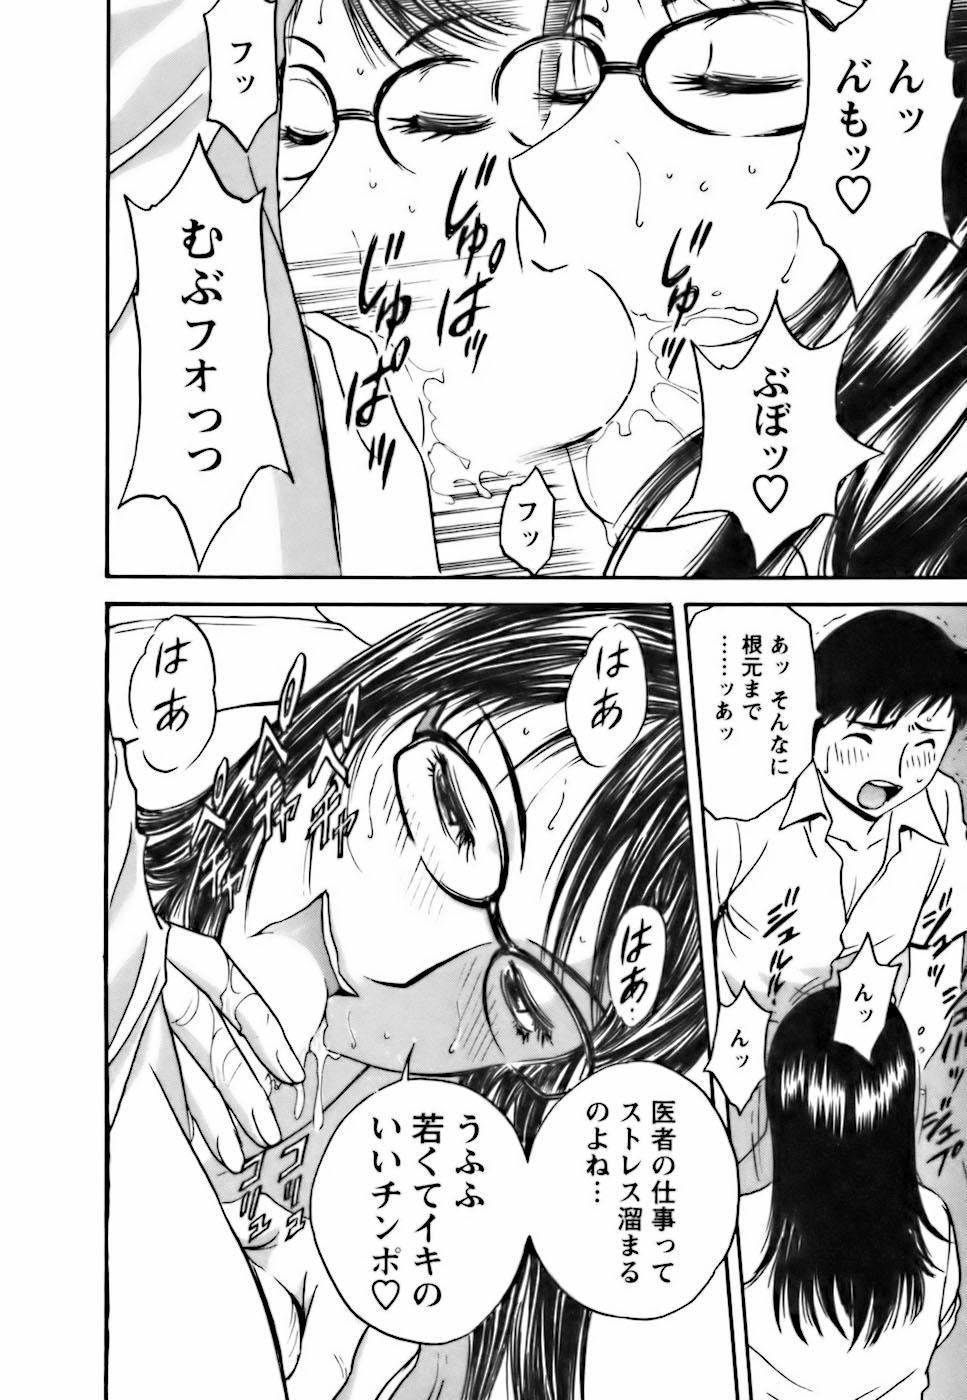 [Hidemaru] Mo-Retsu! Boin Sensei (Boing Boing Teacher) Vol.3 79